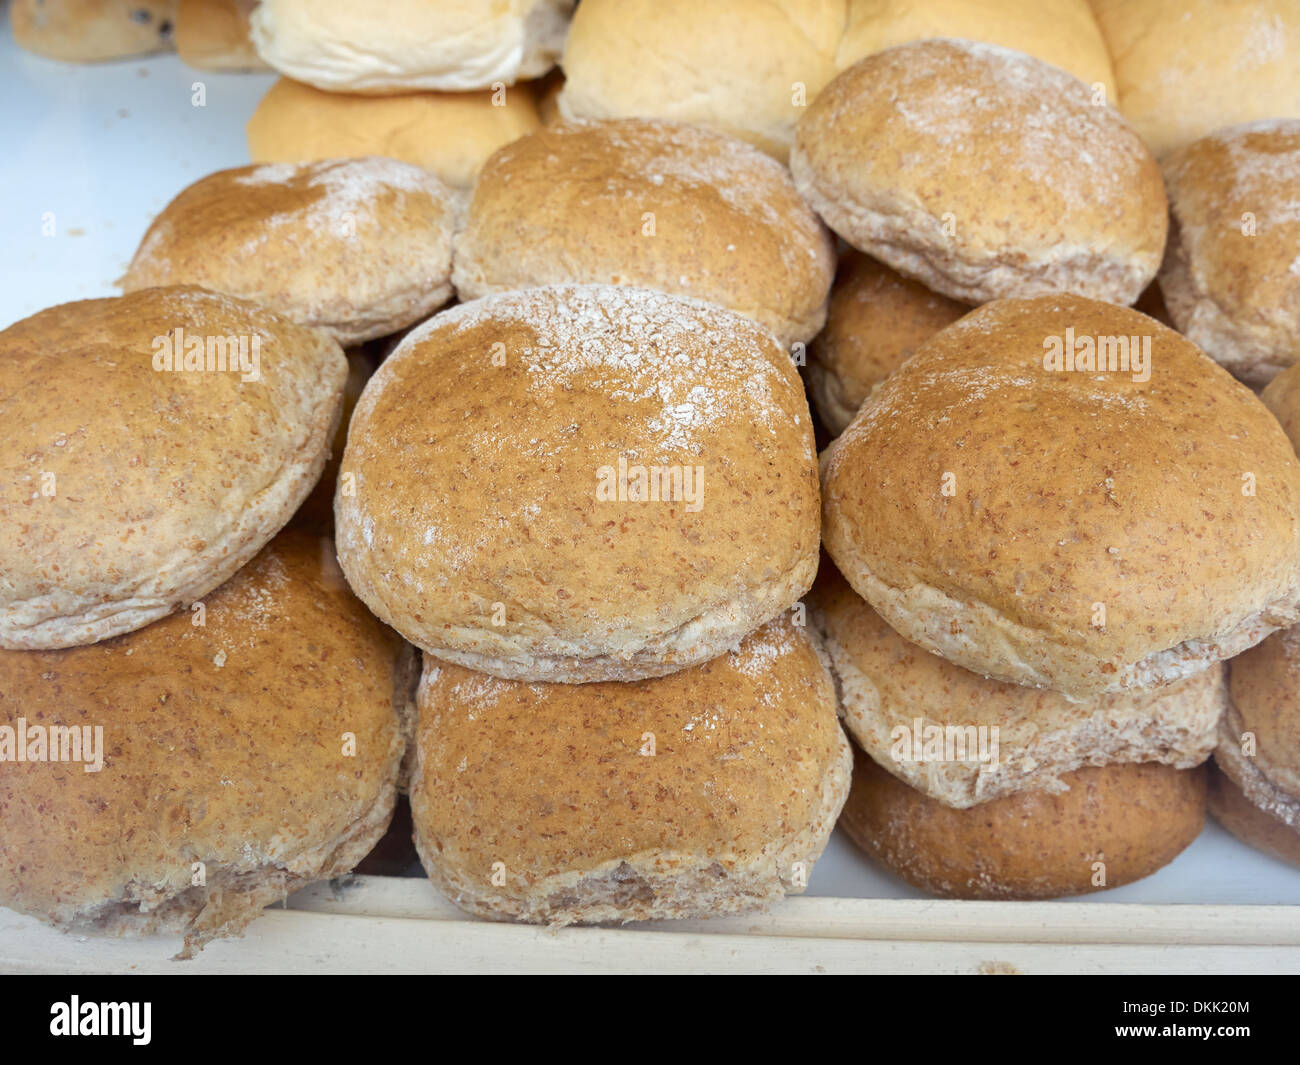 Granary bread rolls in a bakery window Stock Photo